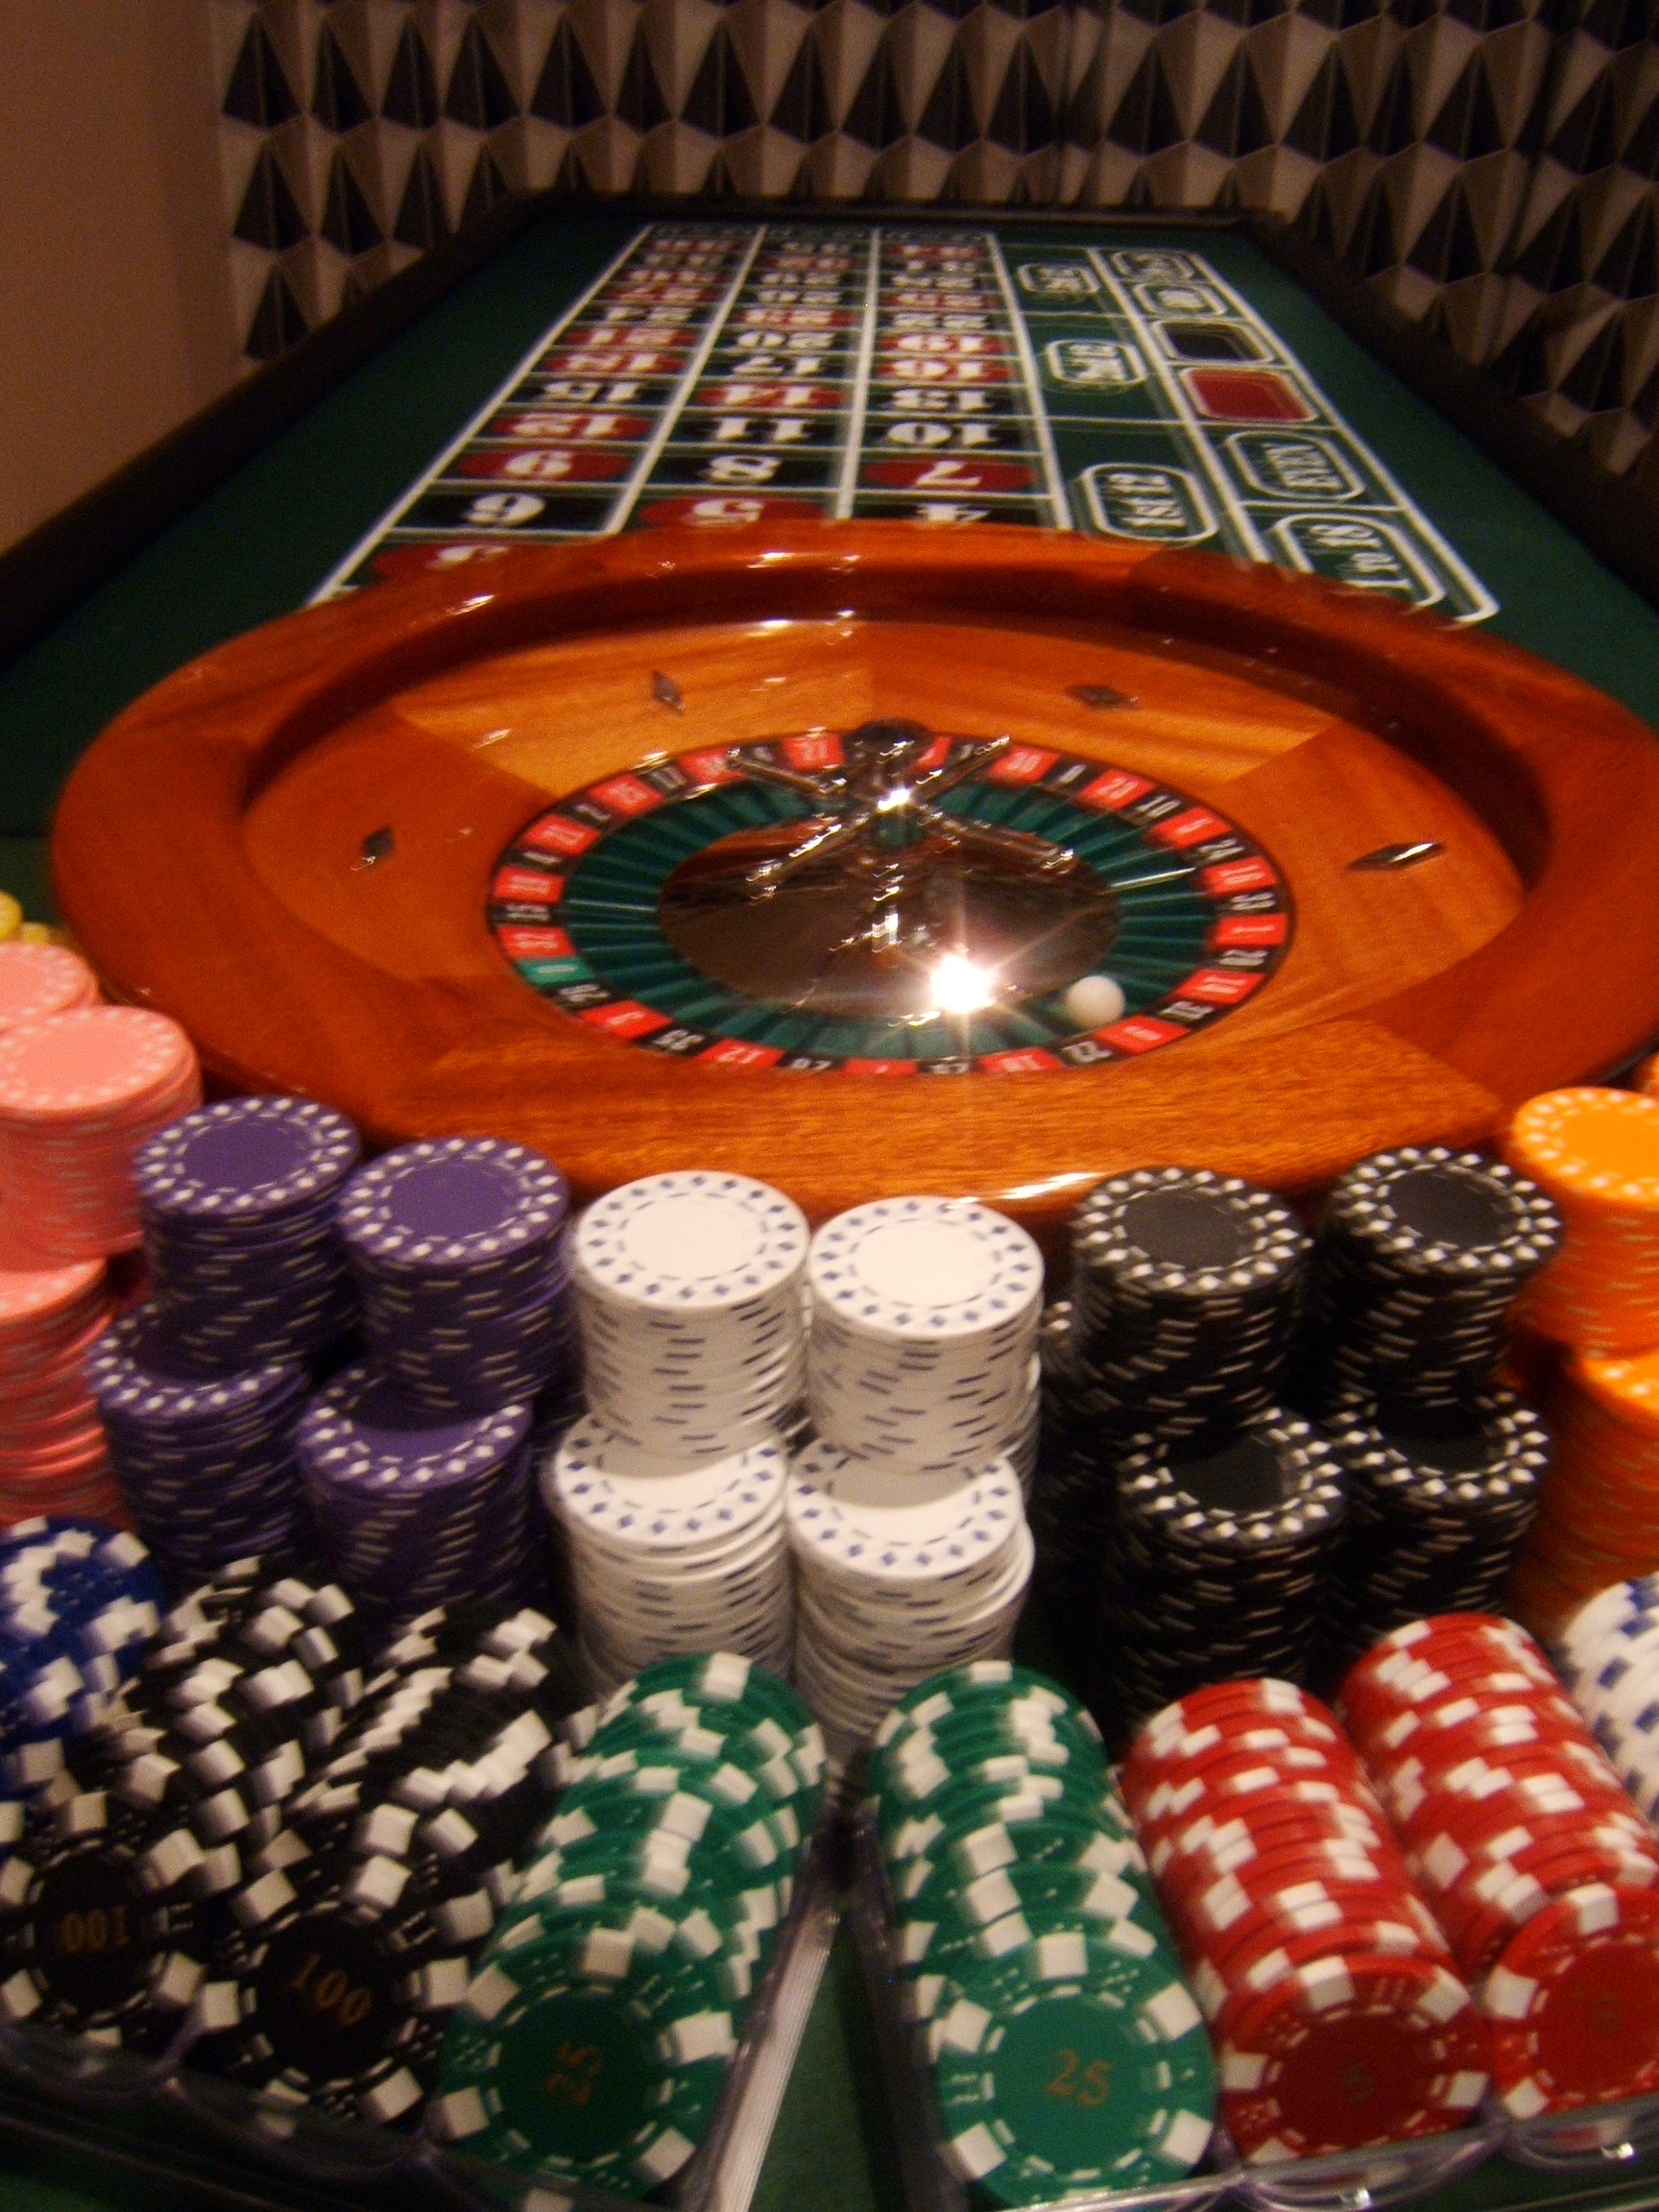 The Etiquette of casino